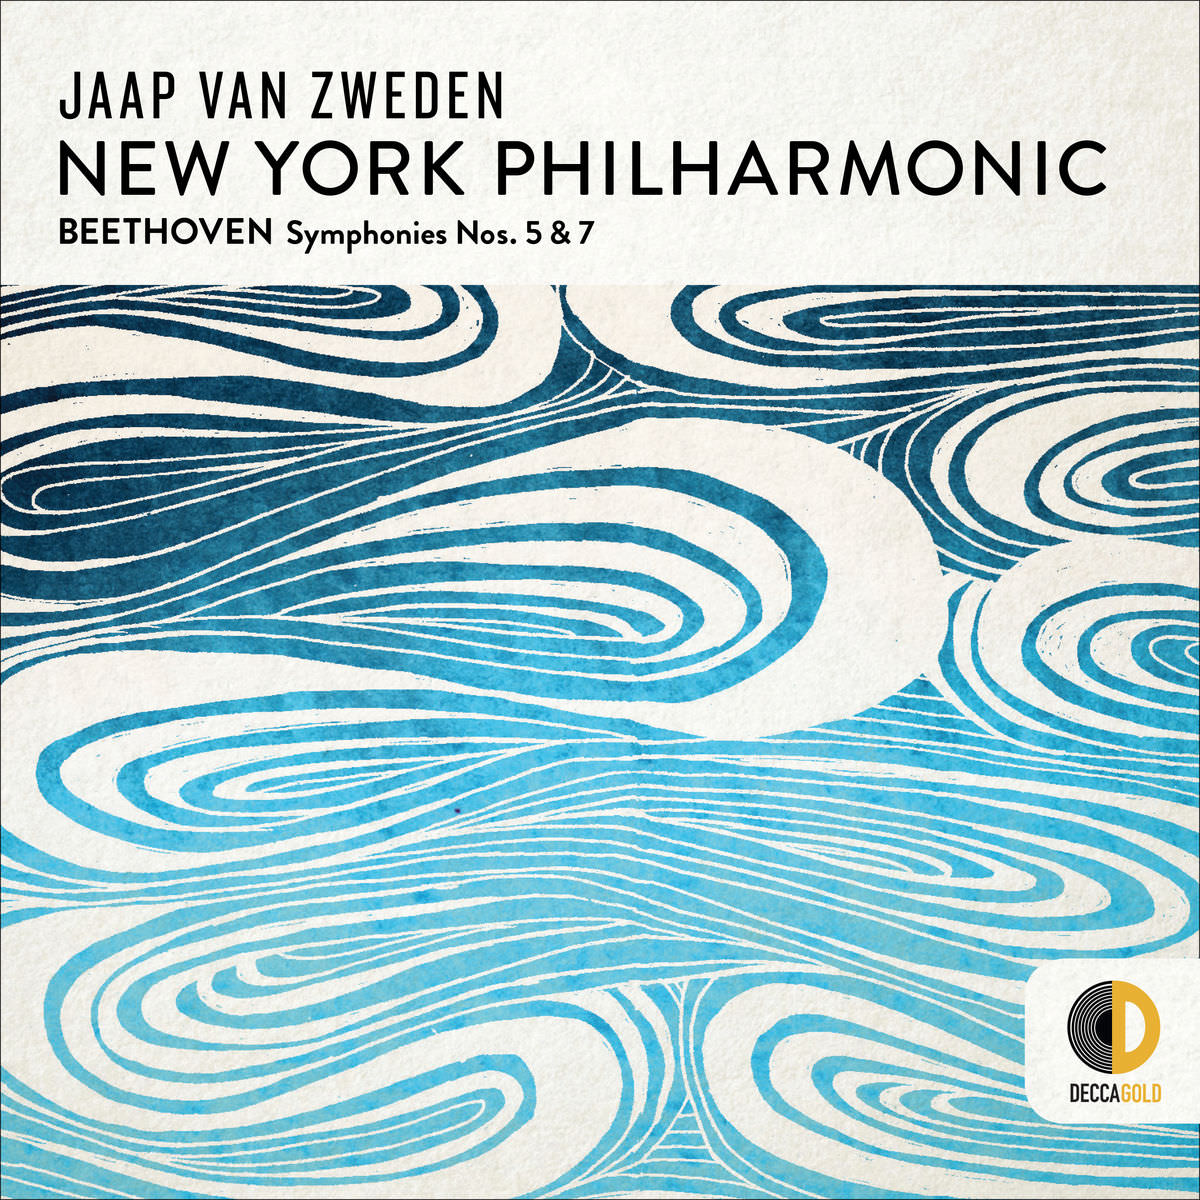 New York Philharmonic, Jaap van Zweden – Beethoven: Symphonies Nos. 5 & 7 (2018) [Official Digital Download 24bit/96kHz]